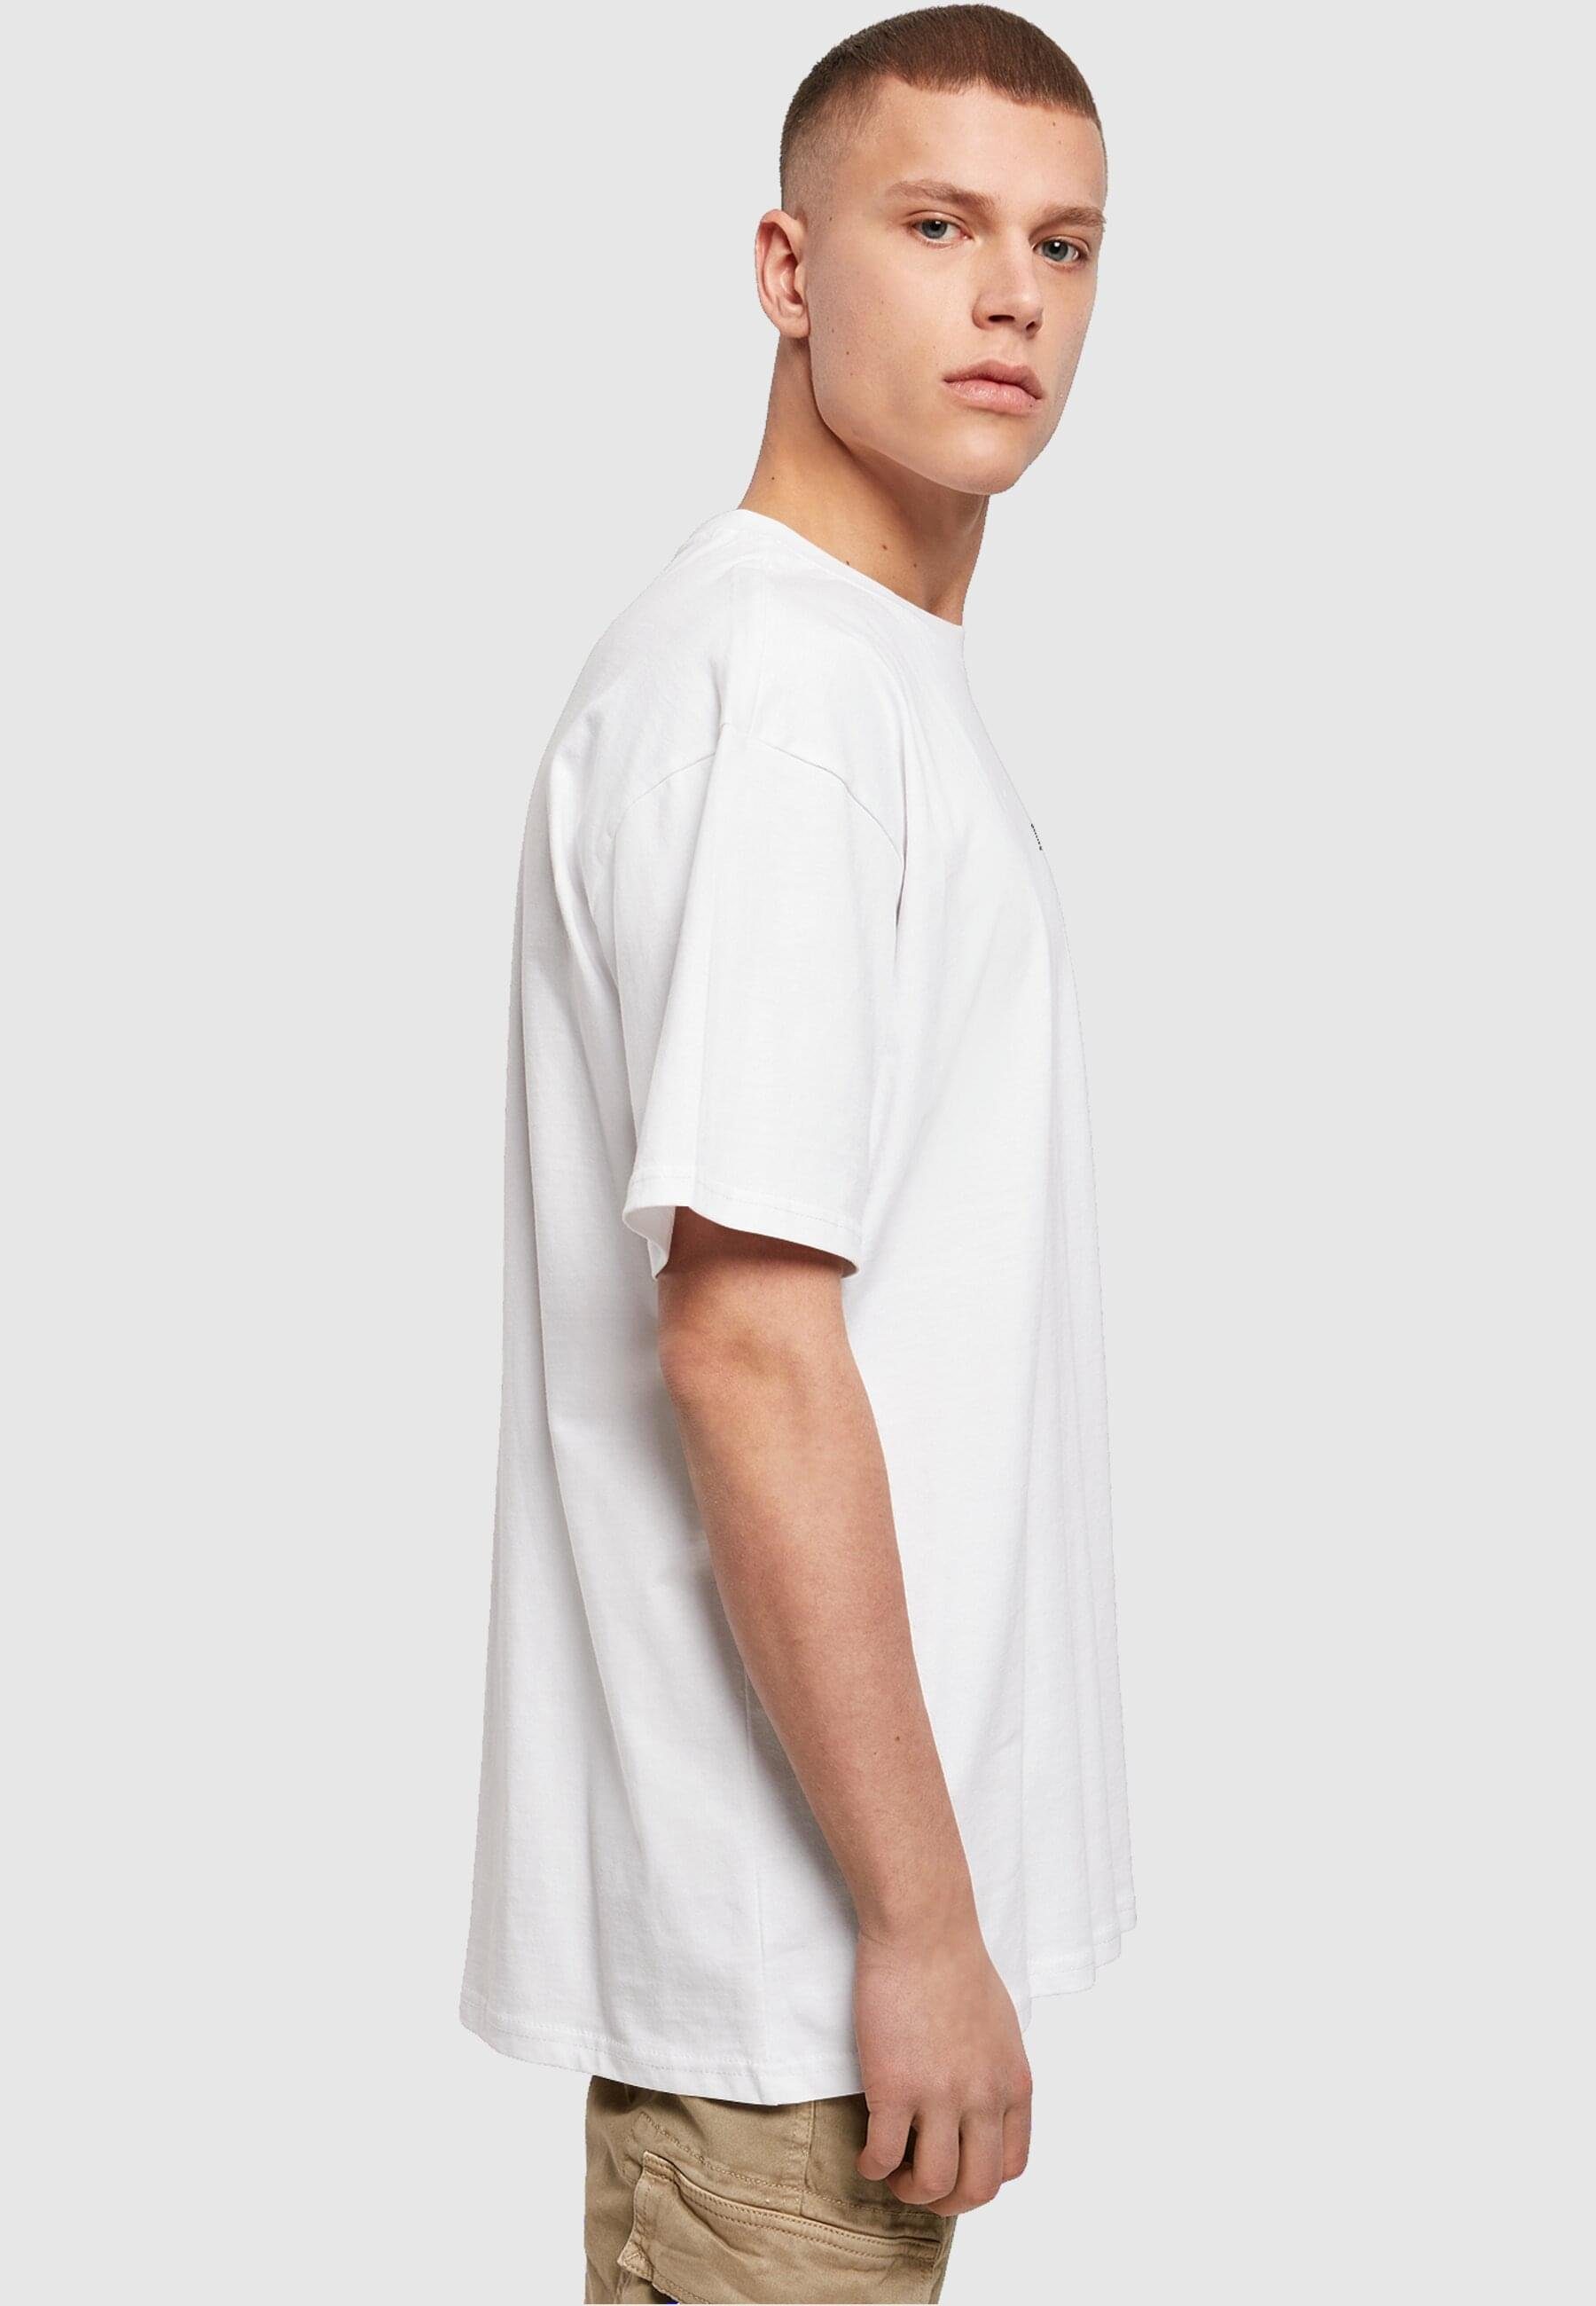 (1-tlg) Oversized Merchcode Tee Love Herren T-Shirt Heavy white